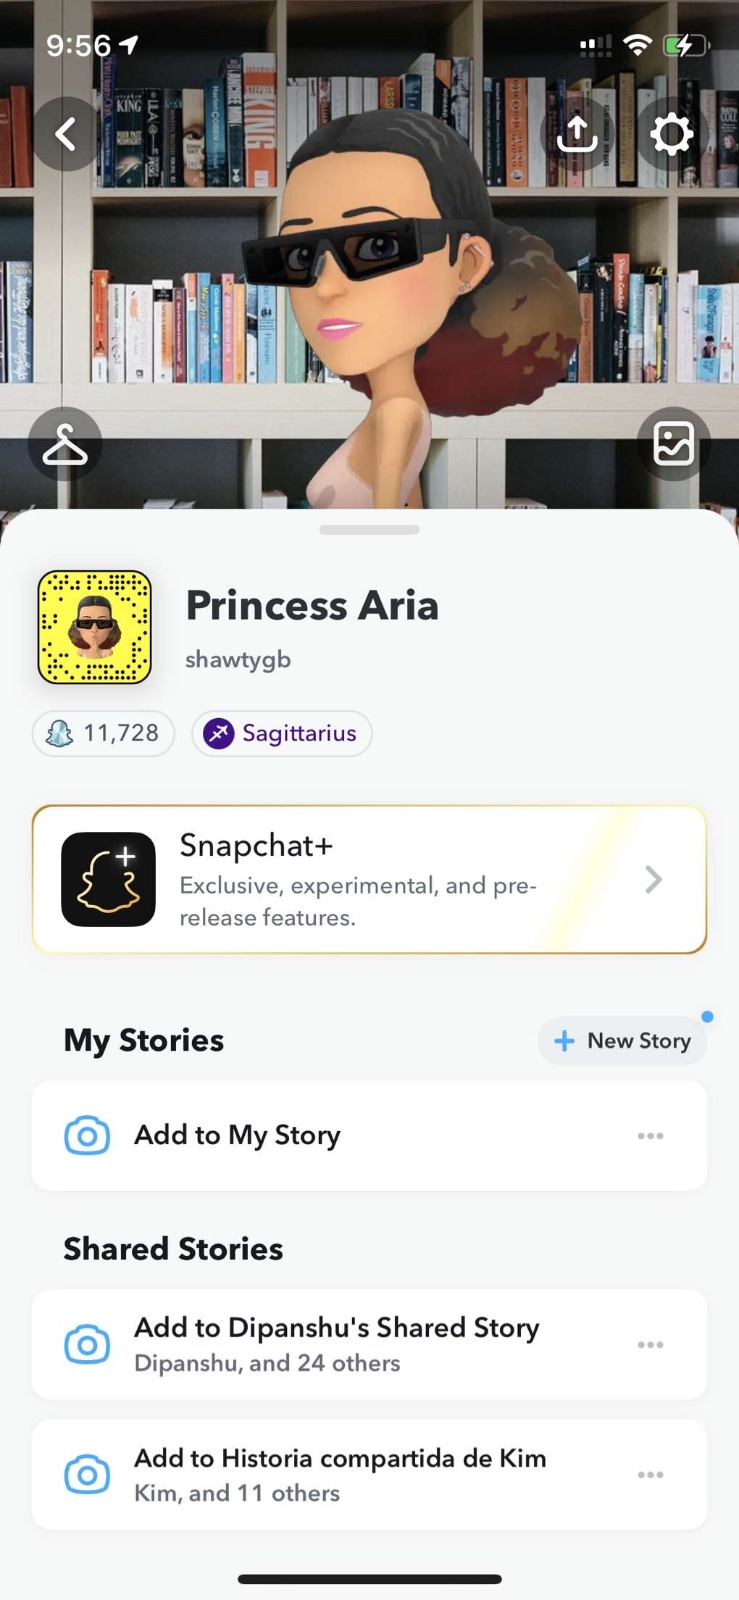 Princess Aria